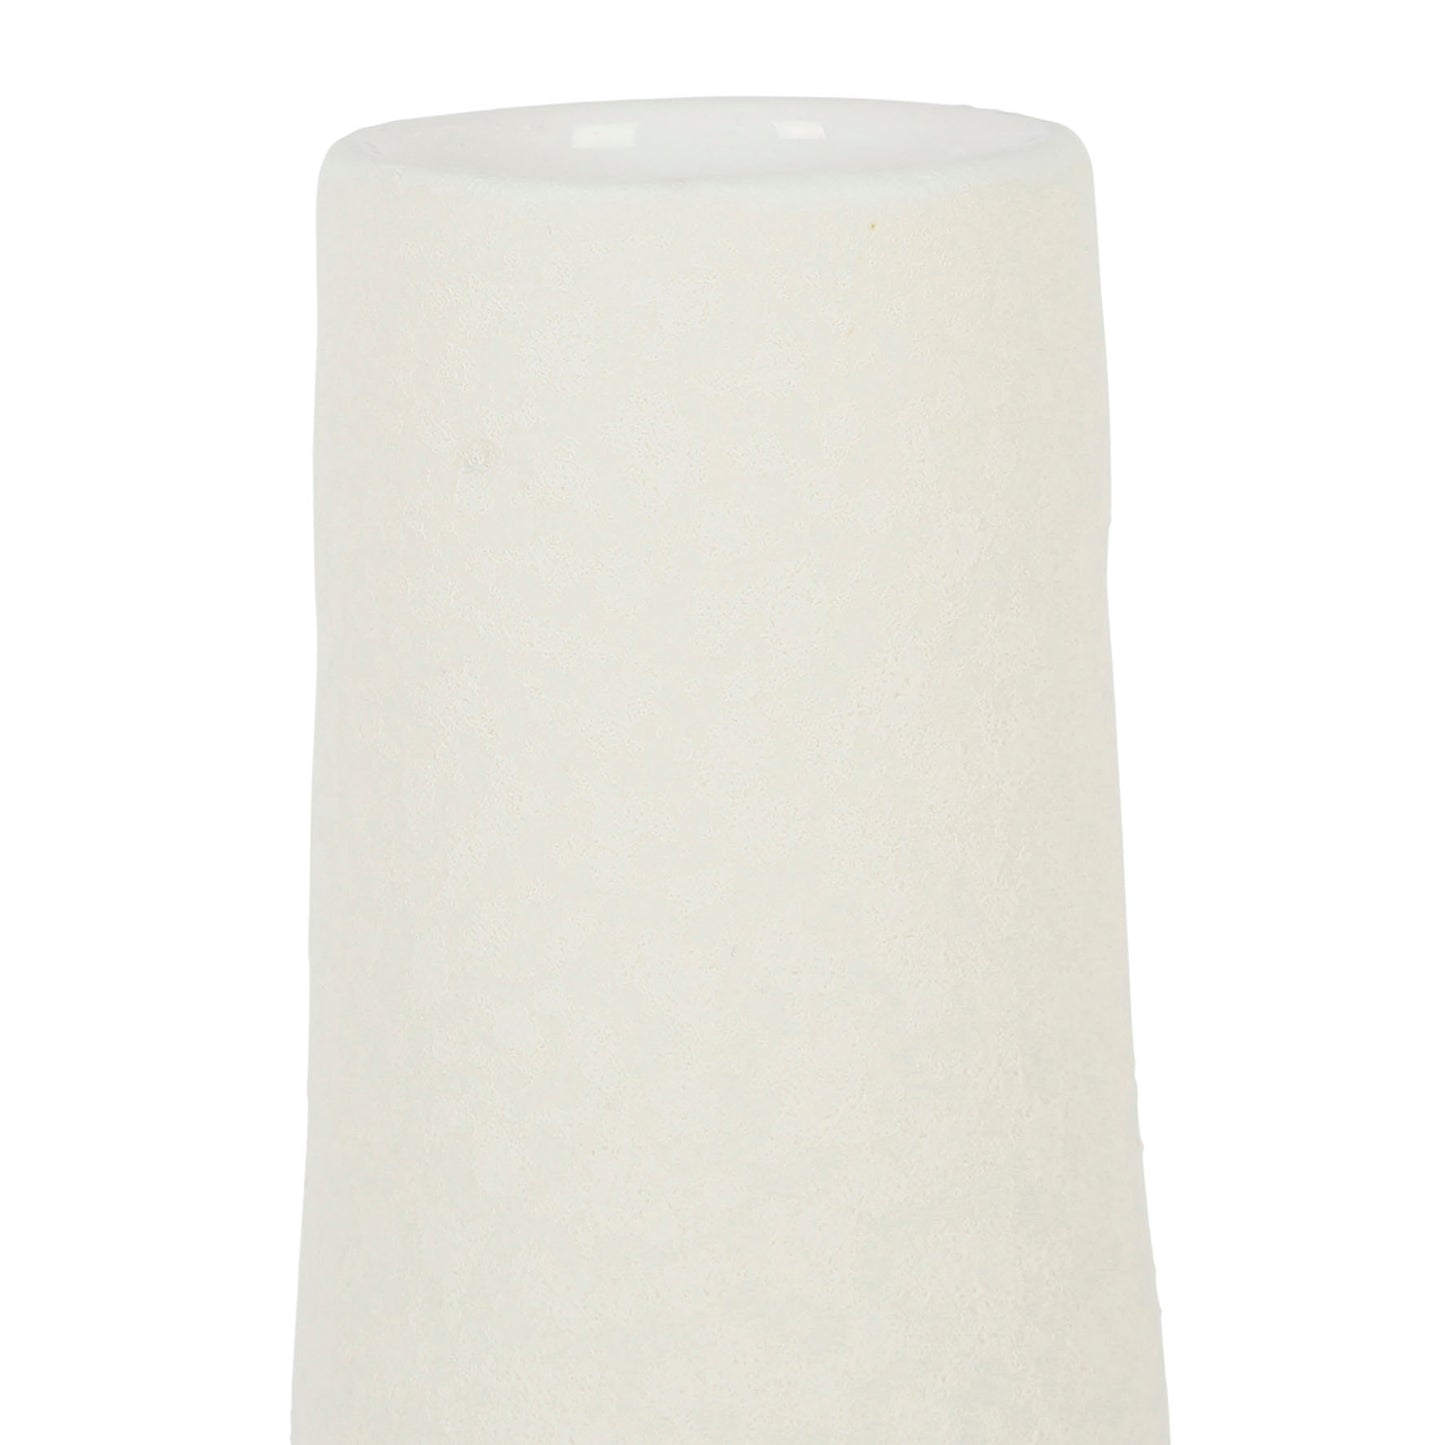 Tall white stoneware vase, 33cm